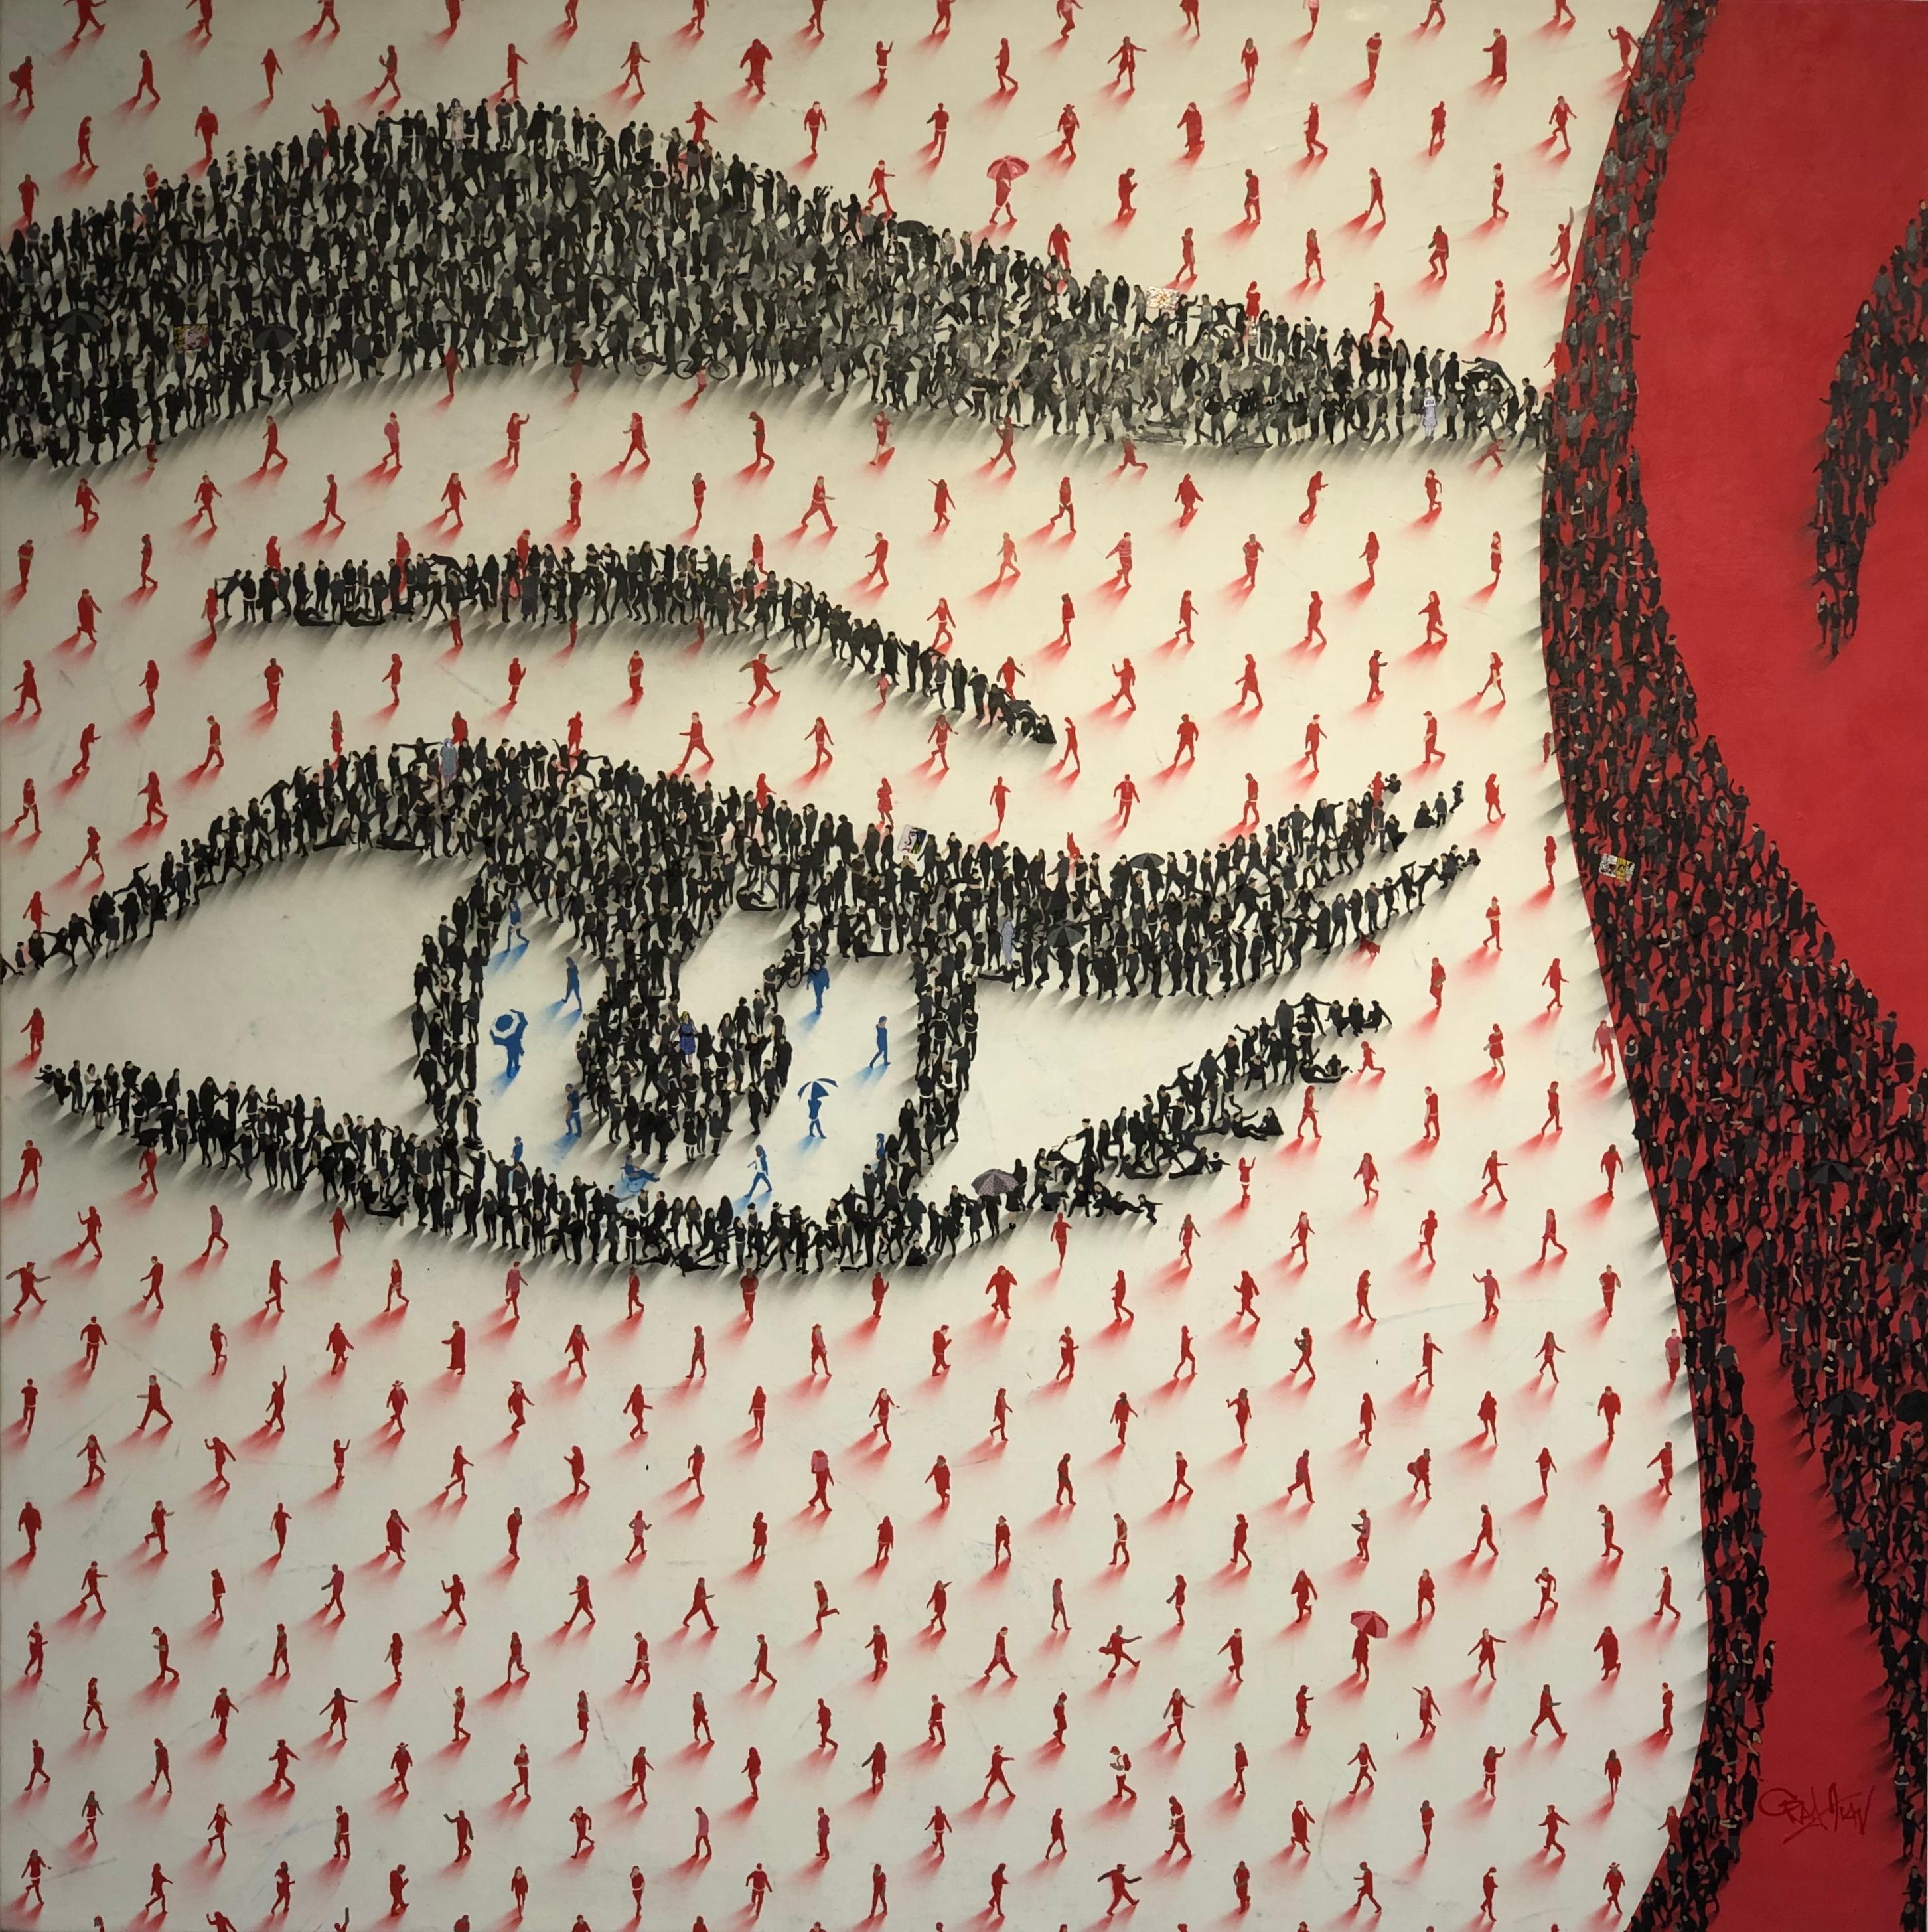 Figurative Painting Alan Craig -  Hommage à Lichtenstein pour son caractère insolent « Je te vois »